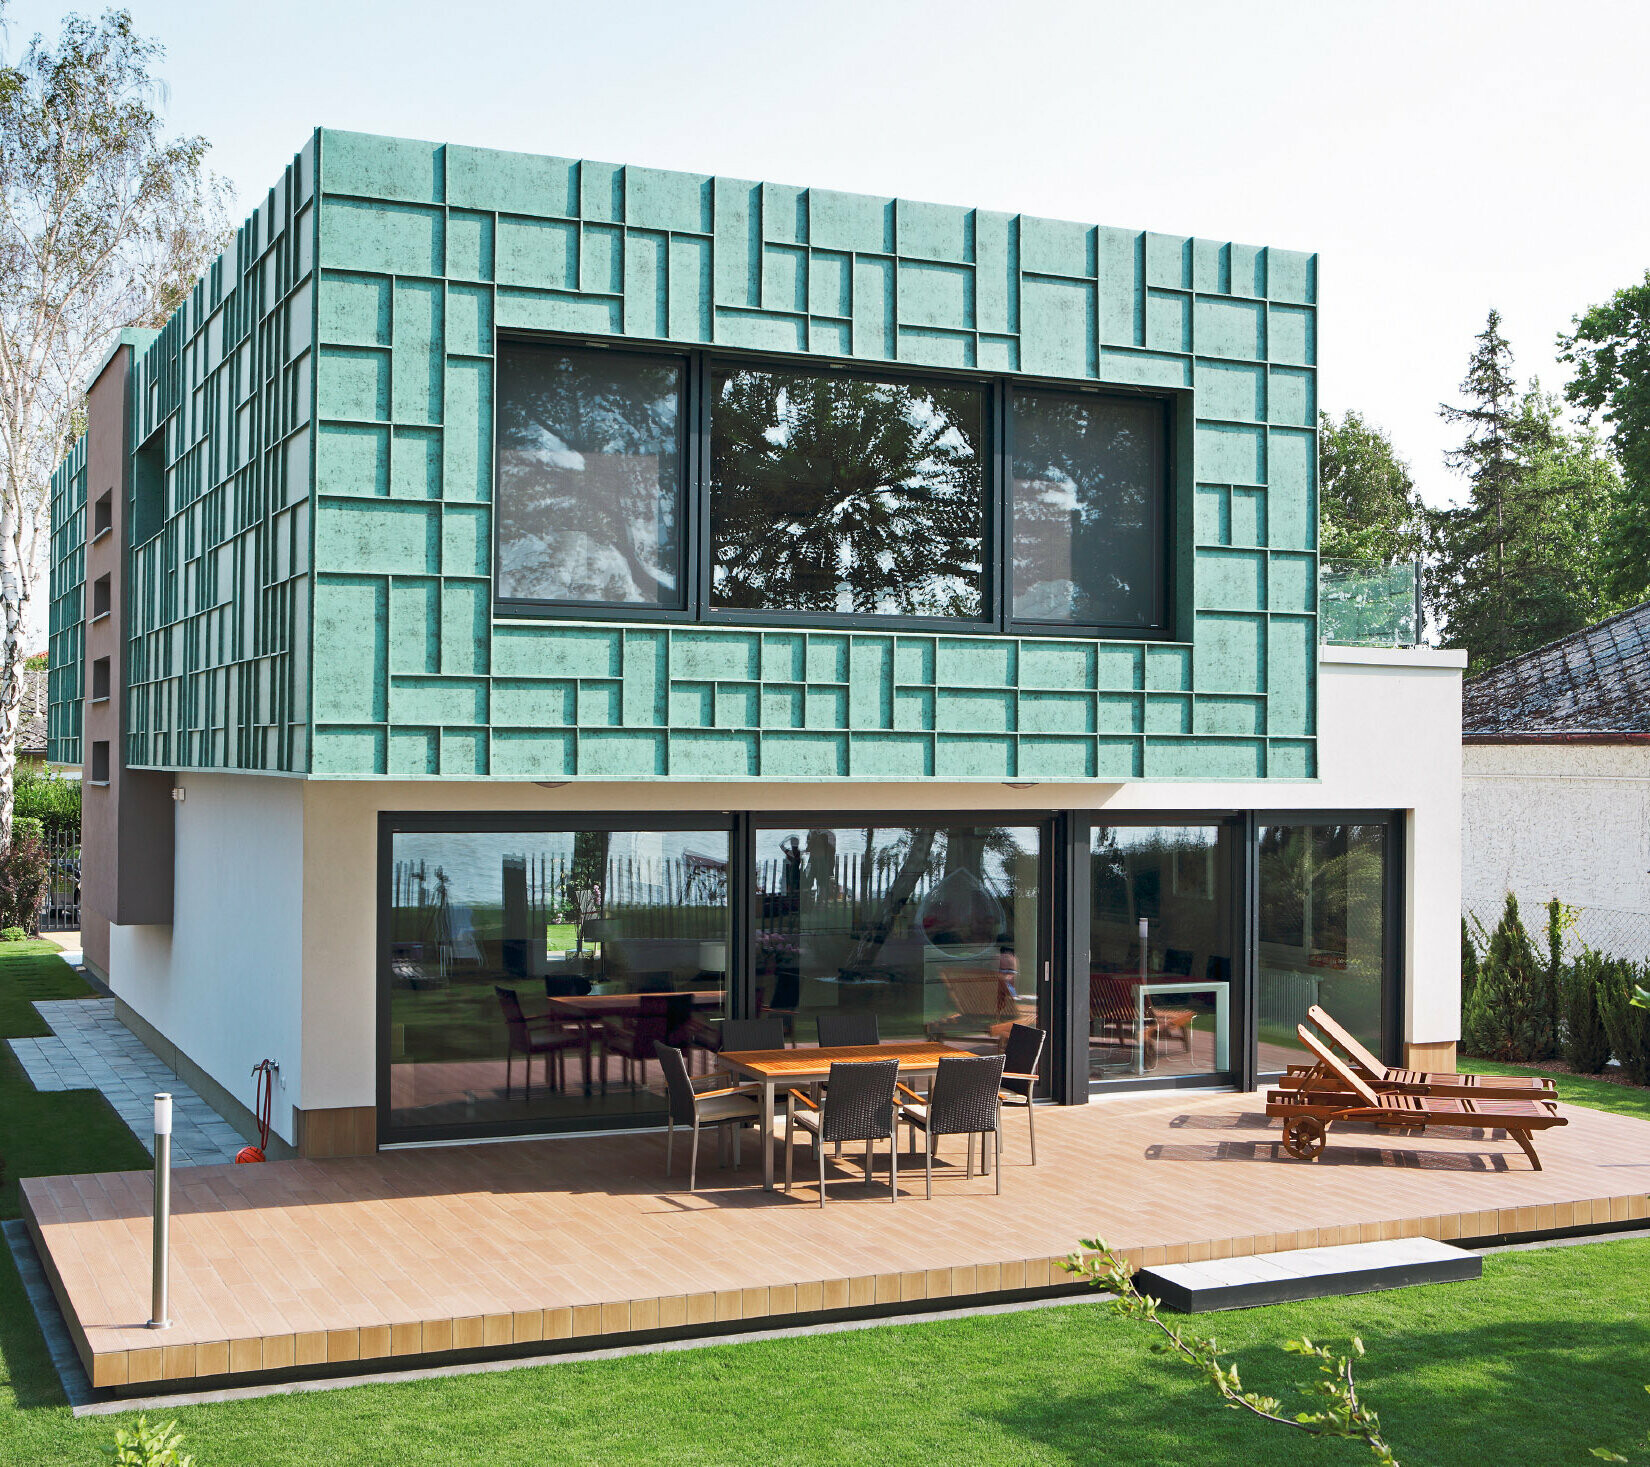 Casa unifamiliare moderna con facciata a prova di tempesta rivestita con PREFALZ di colore P.10 patina verde.